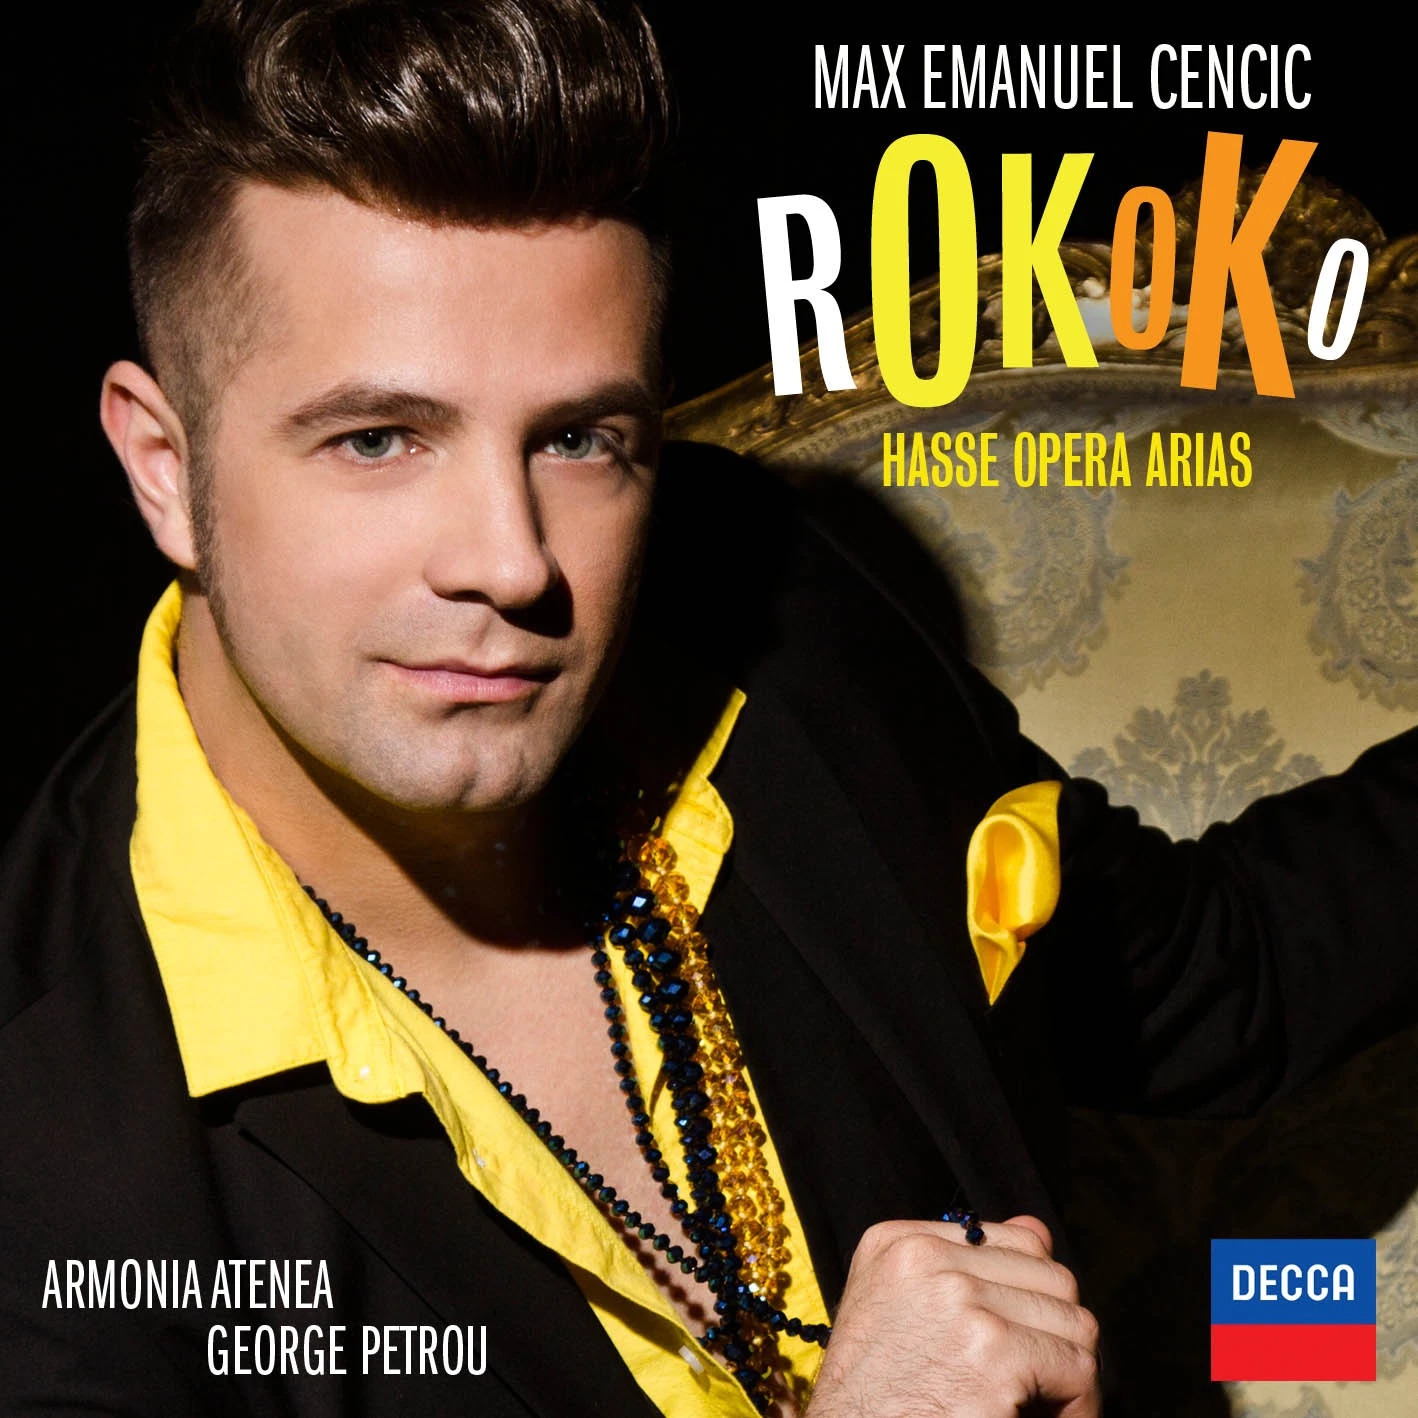 Max Emanuel Cencic CD - Rokoko